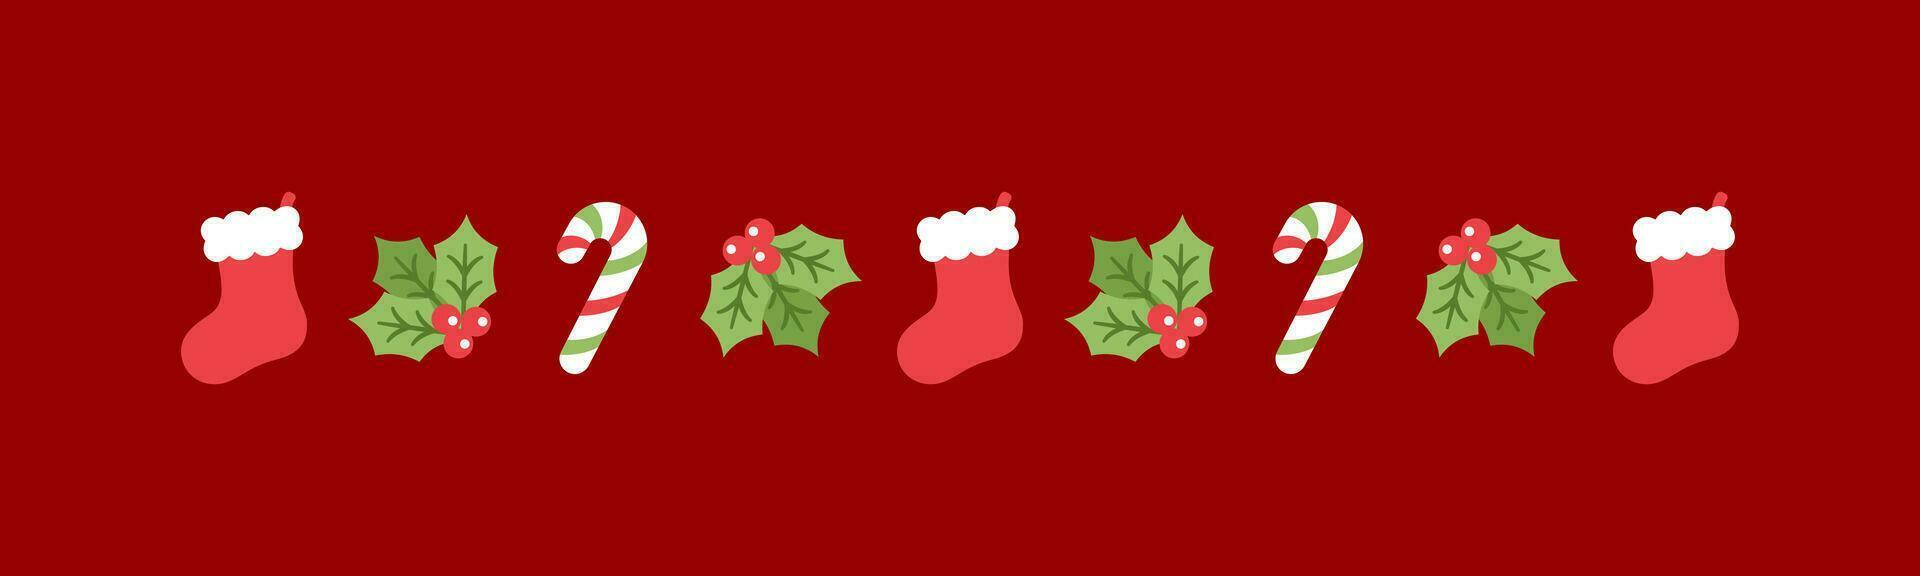 jul tema dekorativ gräns och text delare, jul strumpa, godis sockerrör och mistel mönster. vektor illustration.